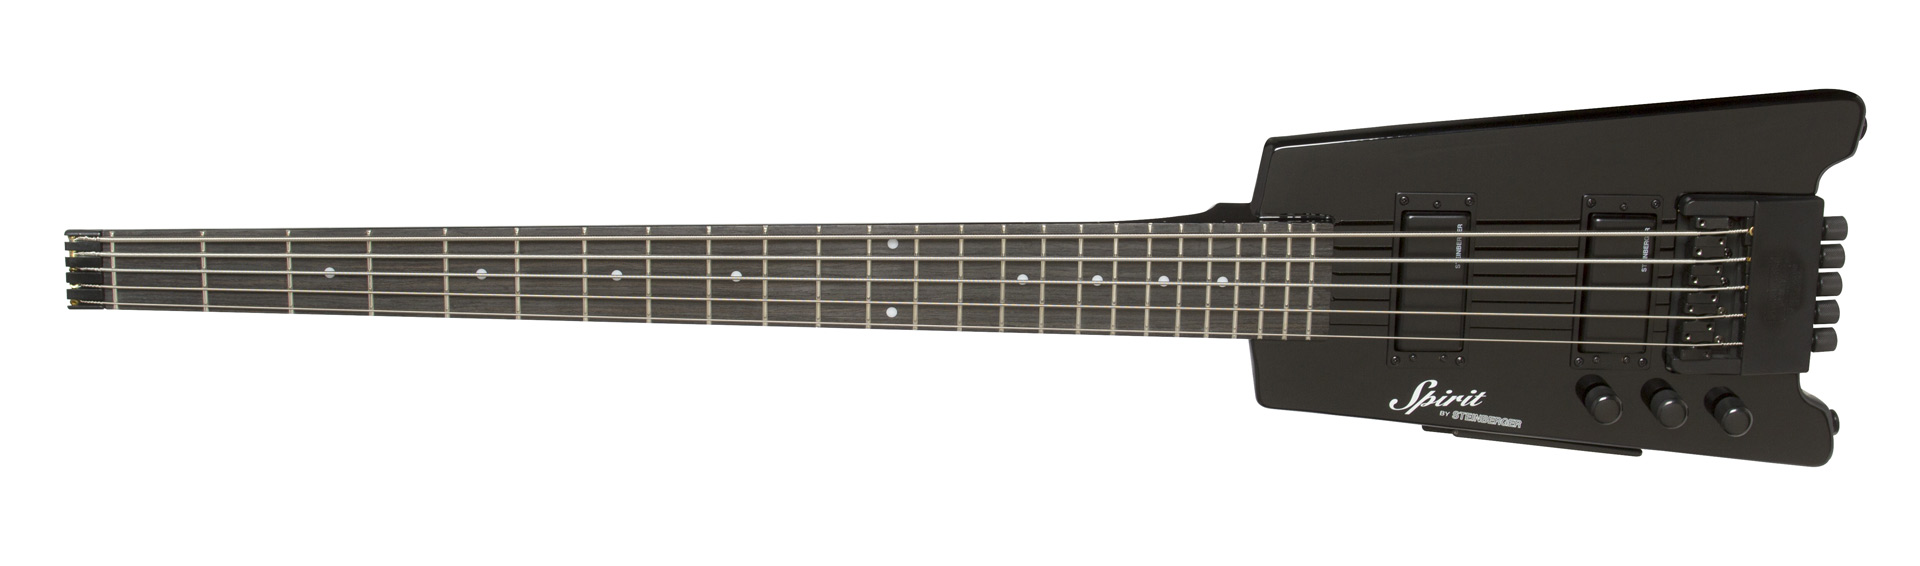 XT-25 Standard Bass LH